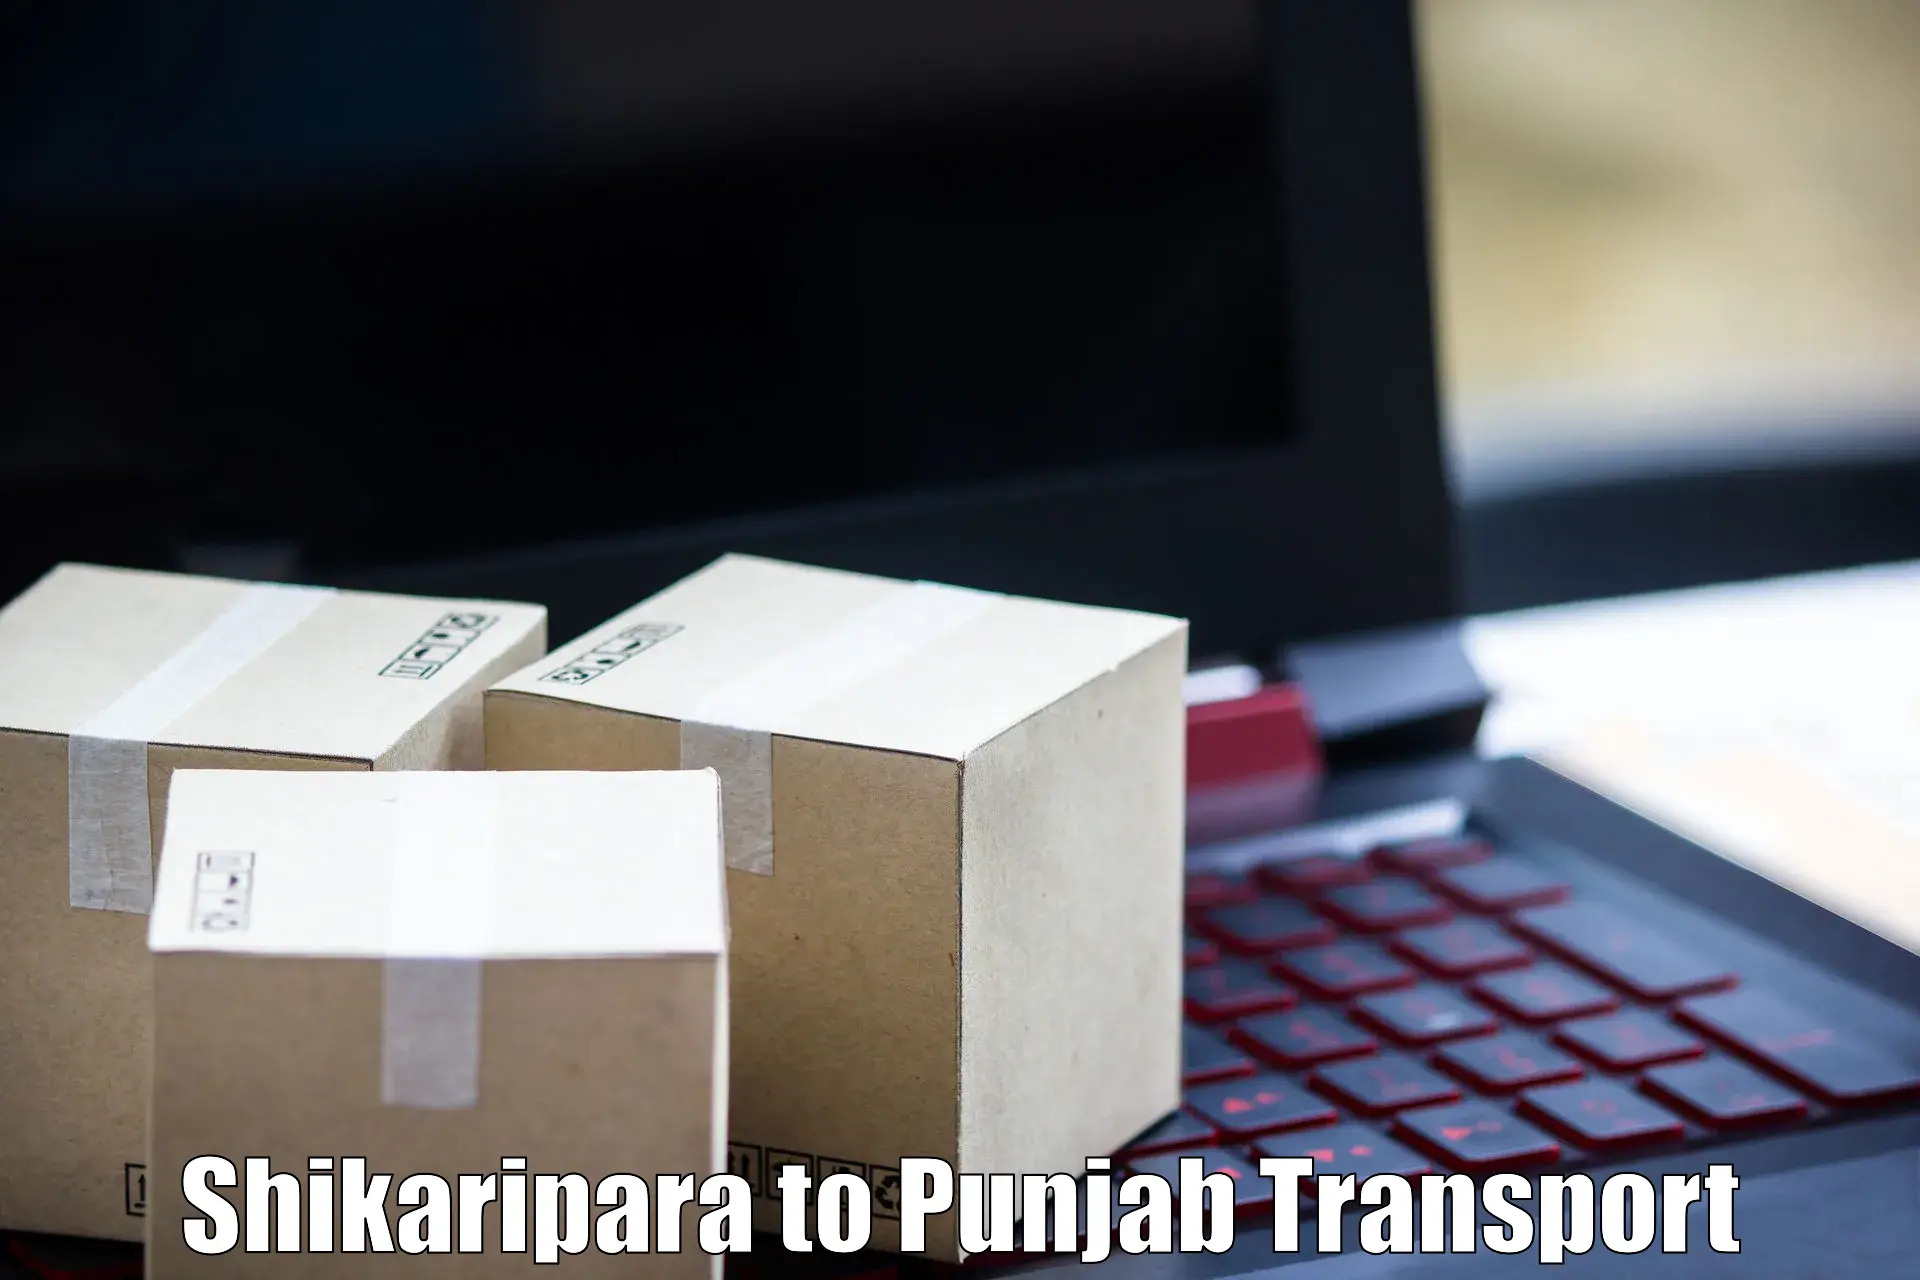 Nearest transport service Shikaripara to Kapurthala